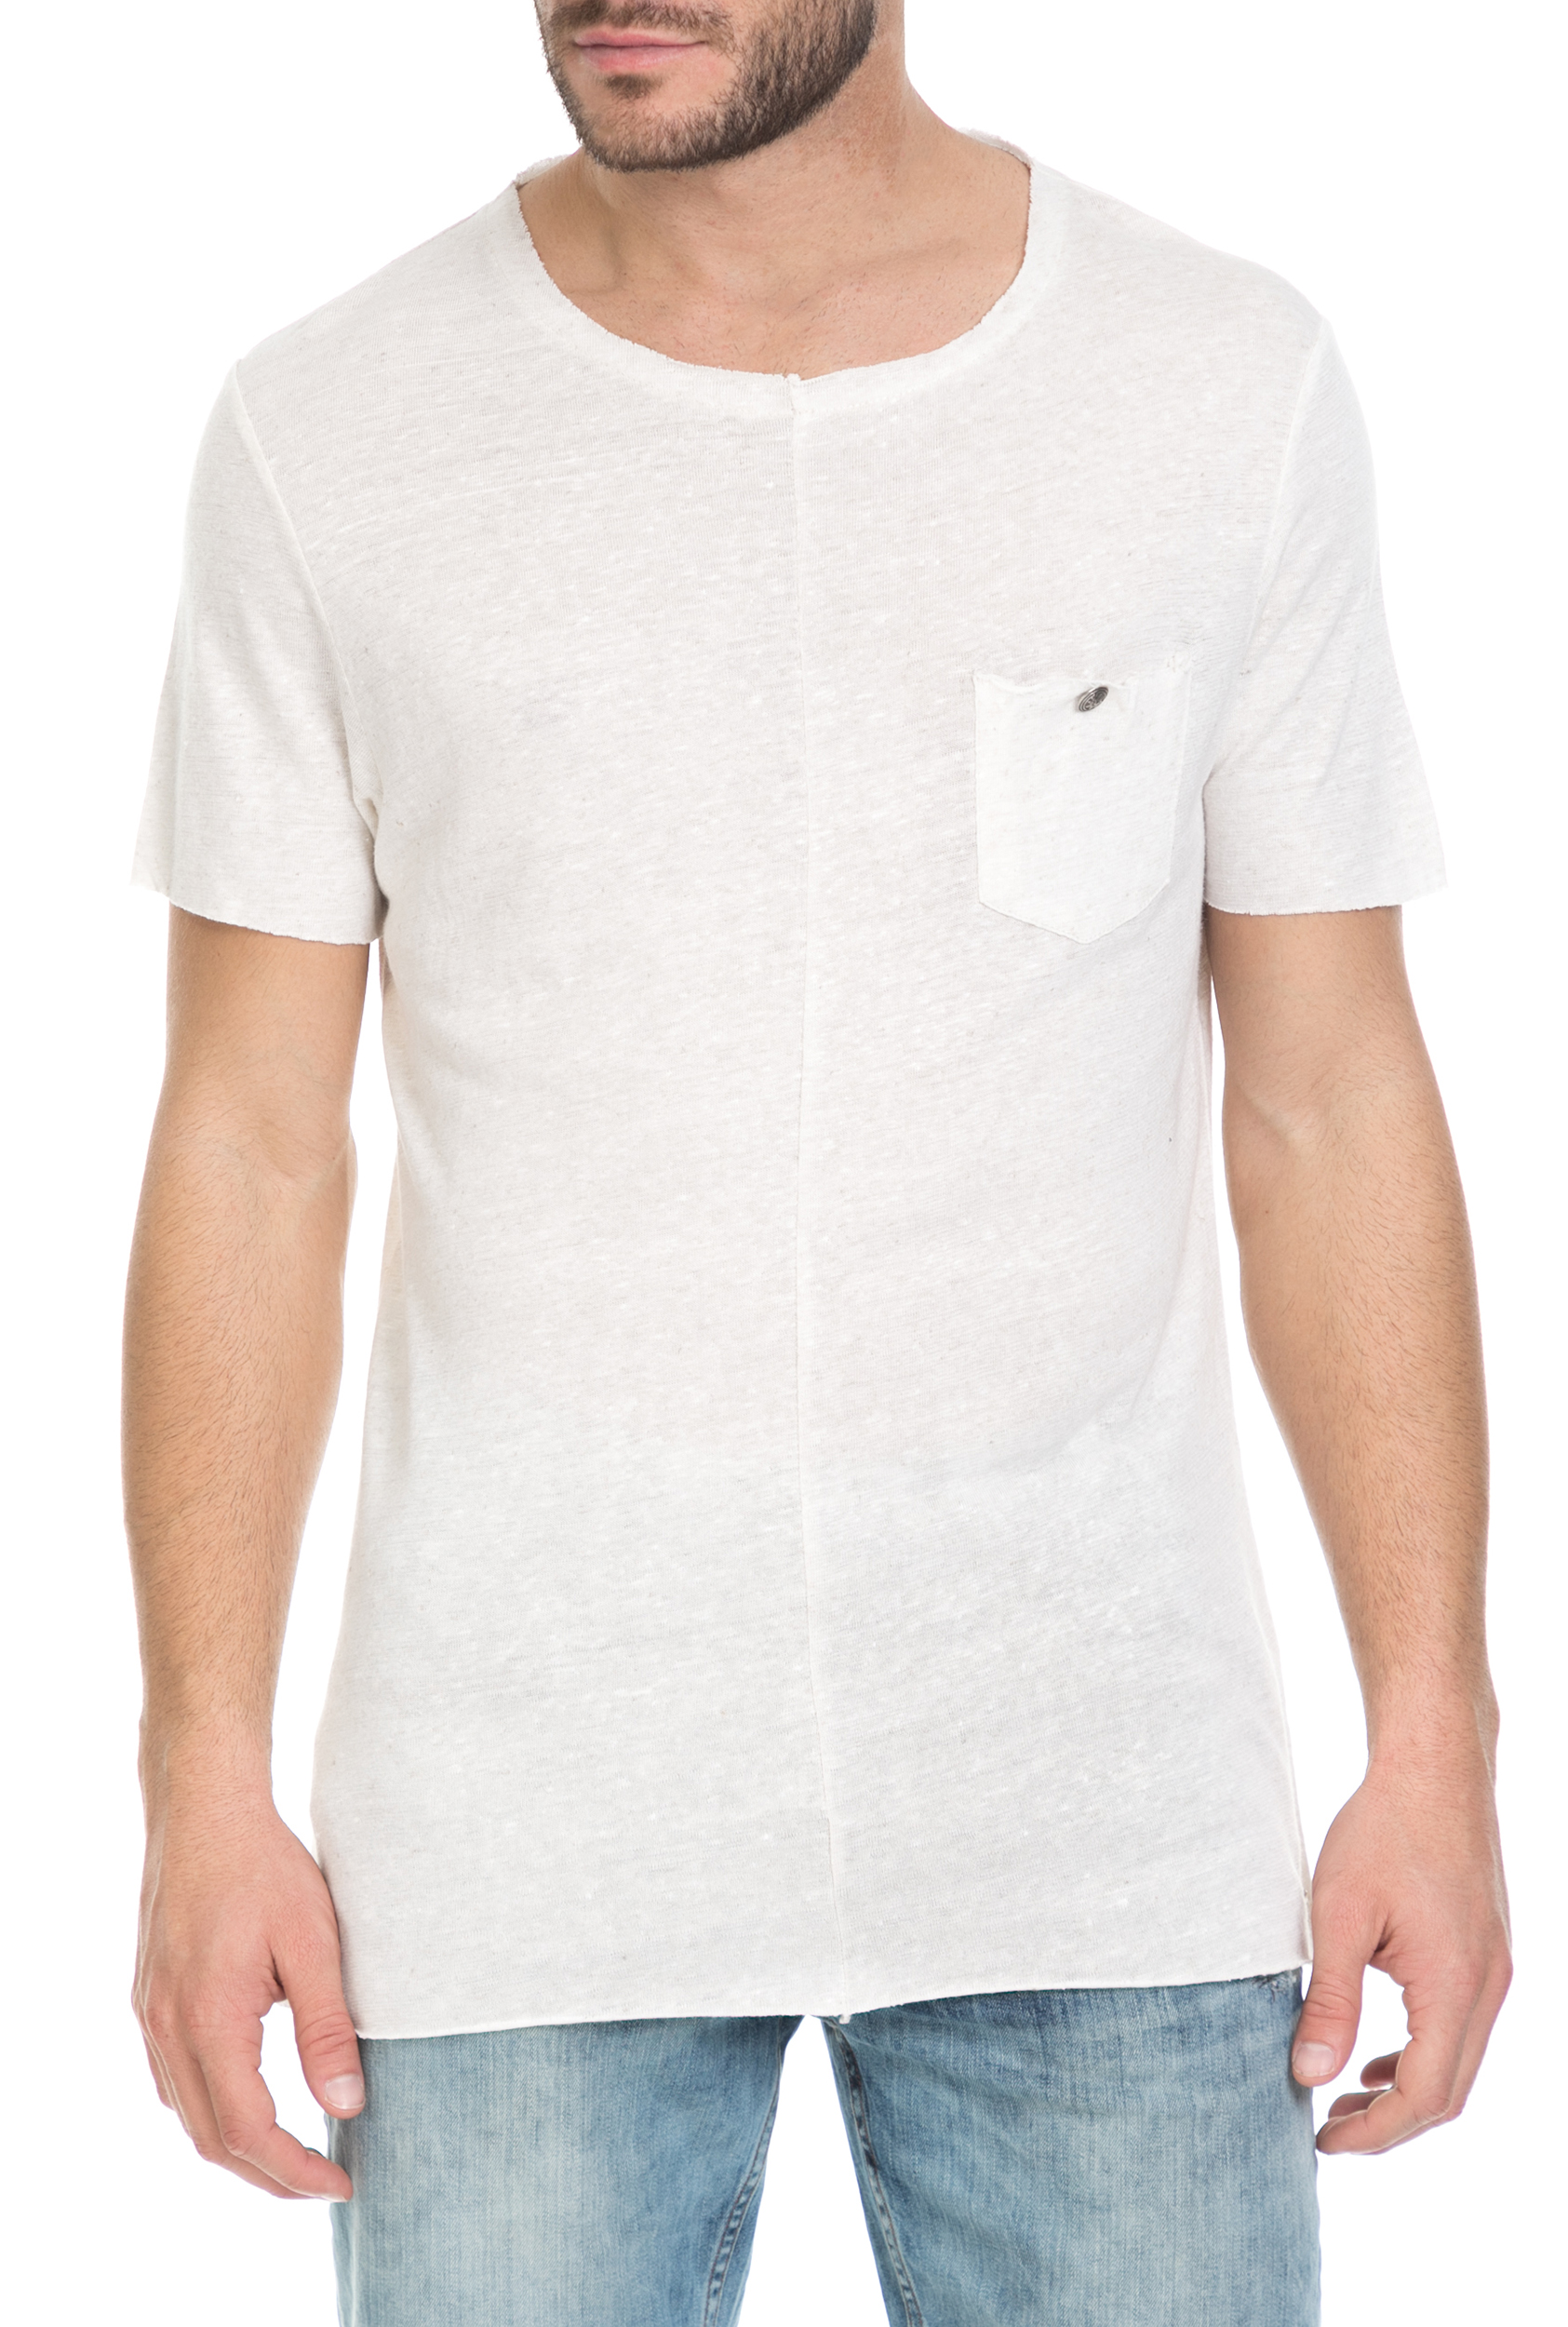 Ανδρικά/Ρούχα/Μπλούζες/Κοντομάνικες SSEINSE - Ανδρικό t-shirt SSEINSE μπεζ